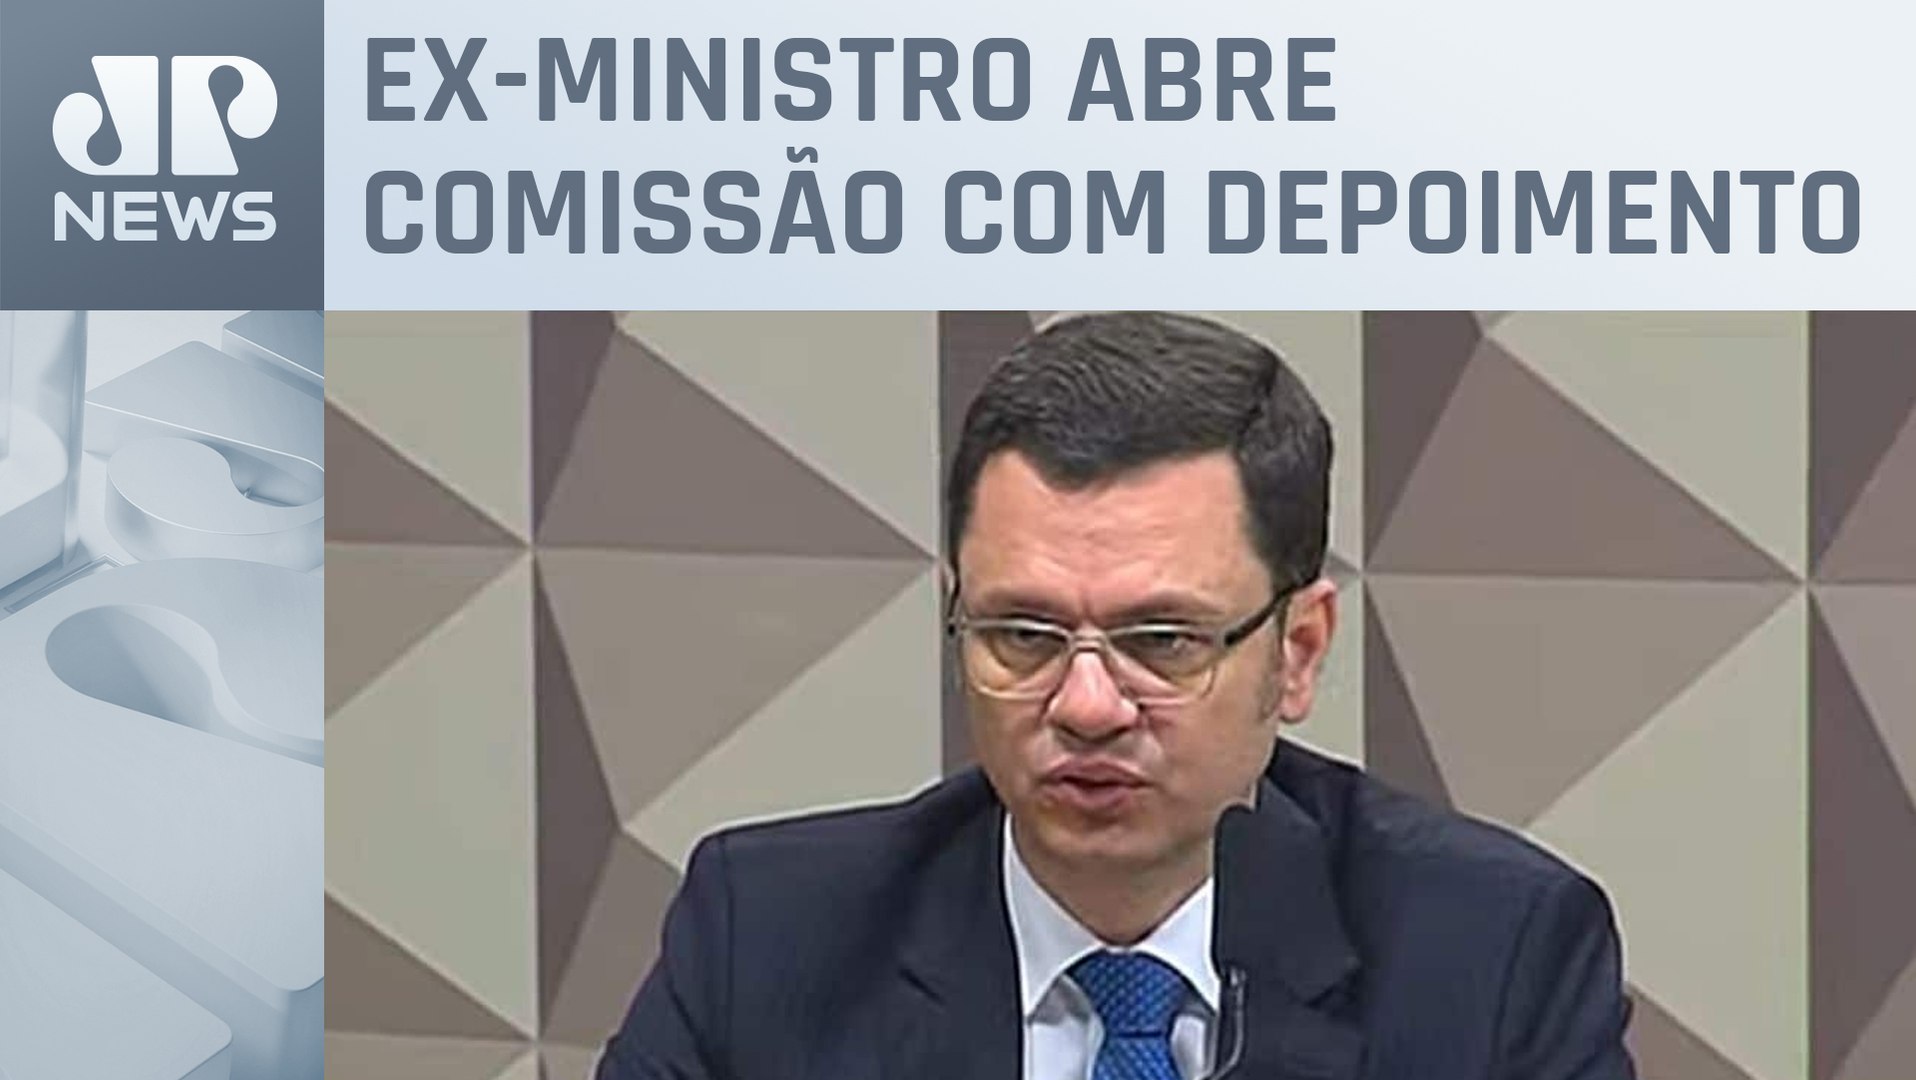 Ao vivo: CPMI do 8 de Janeiro ouve ex-ministro da Justiça Anderson Torres -  Tudo ok Notícias